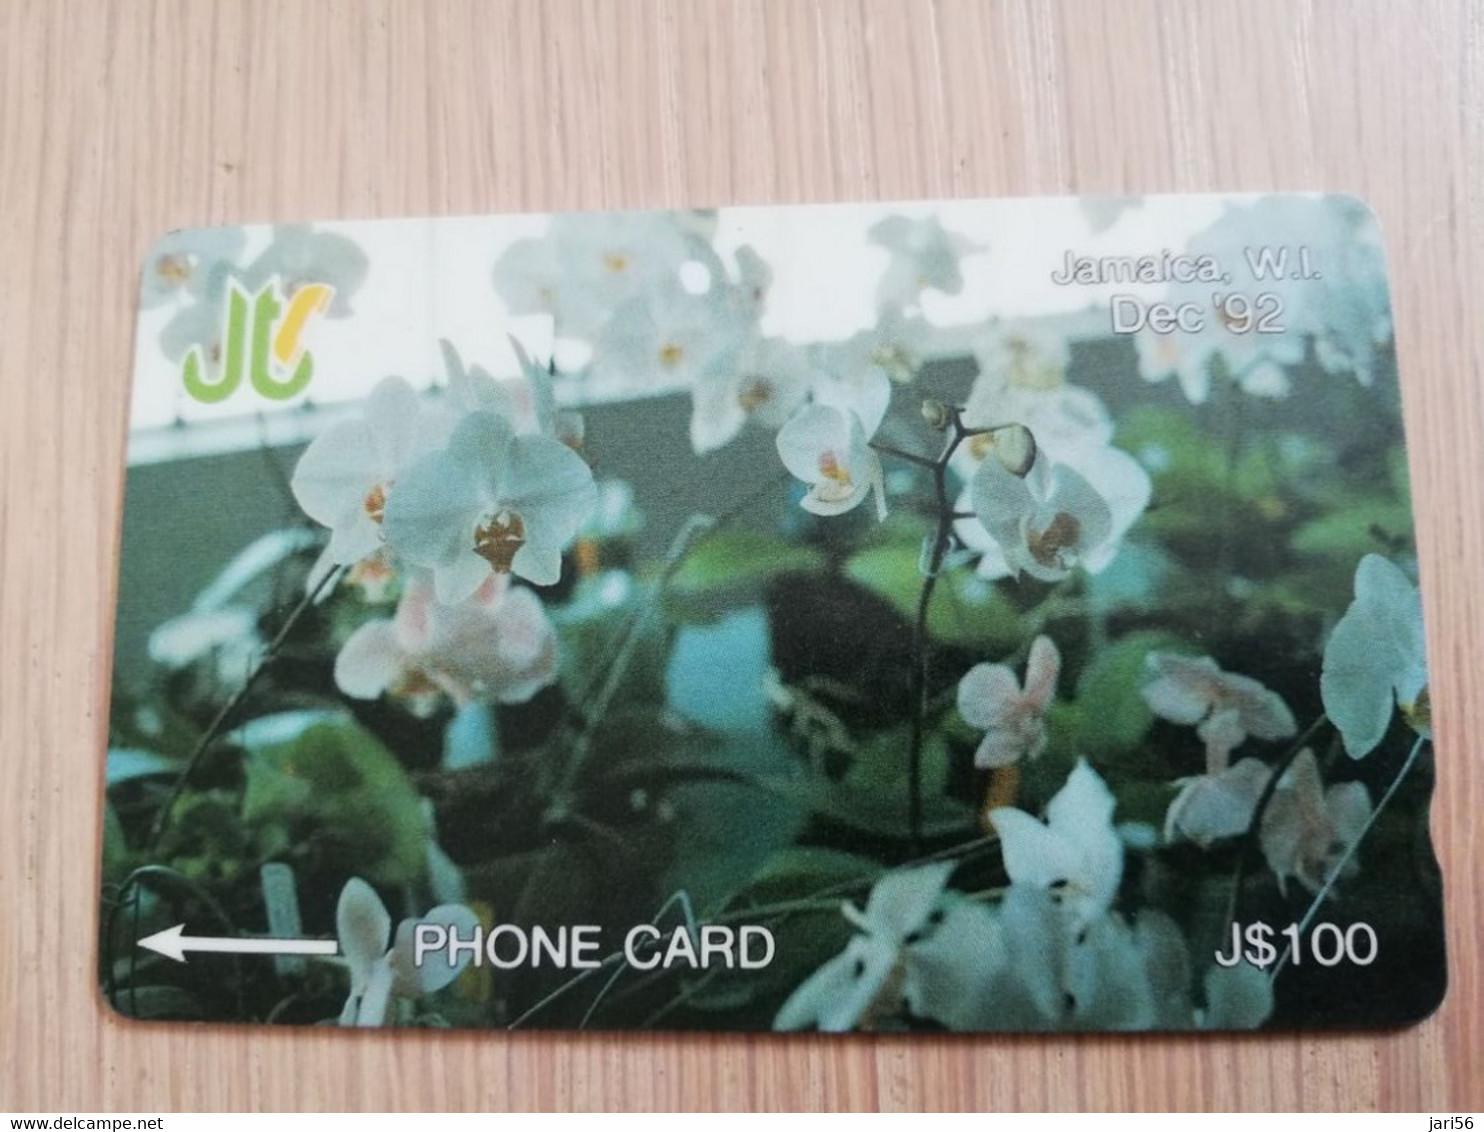 JAMAICA  J$100-  GPT CARD   DECEMBER 92 ORCHIDS CONTROL NR: 13JAMC   Fine Used Card  **3233** - Jamaica